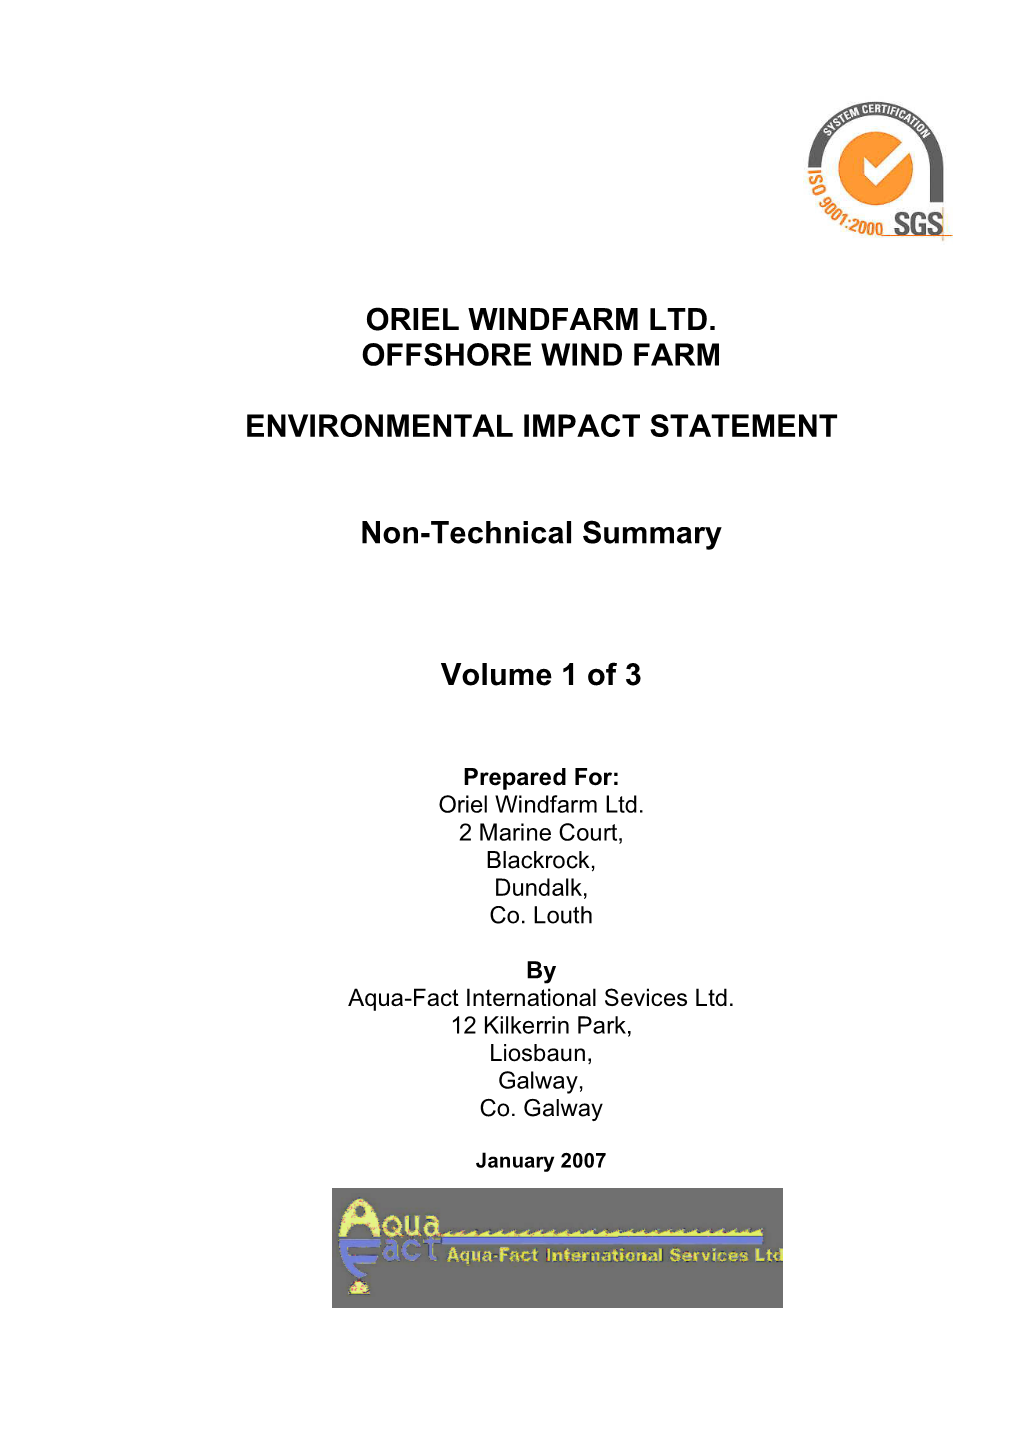 Oriel Windfarm Ltd. Offshore Wind Farm Environmental